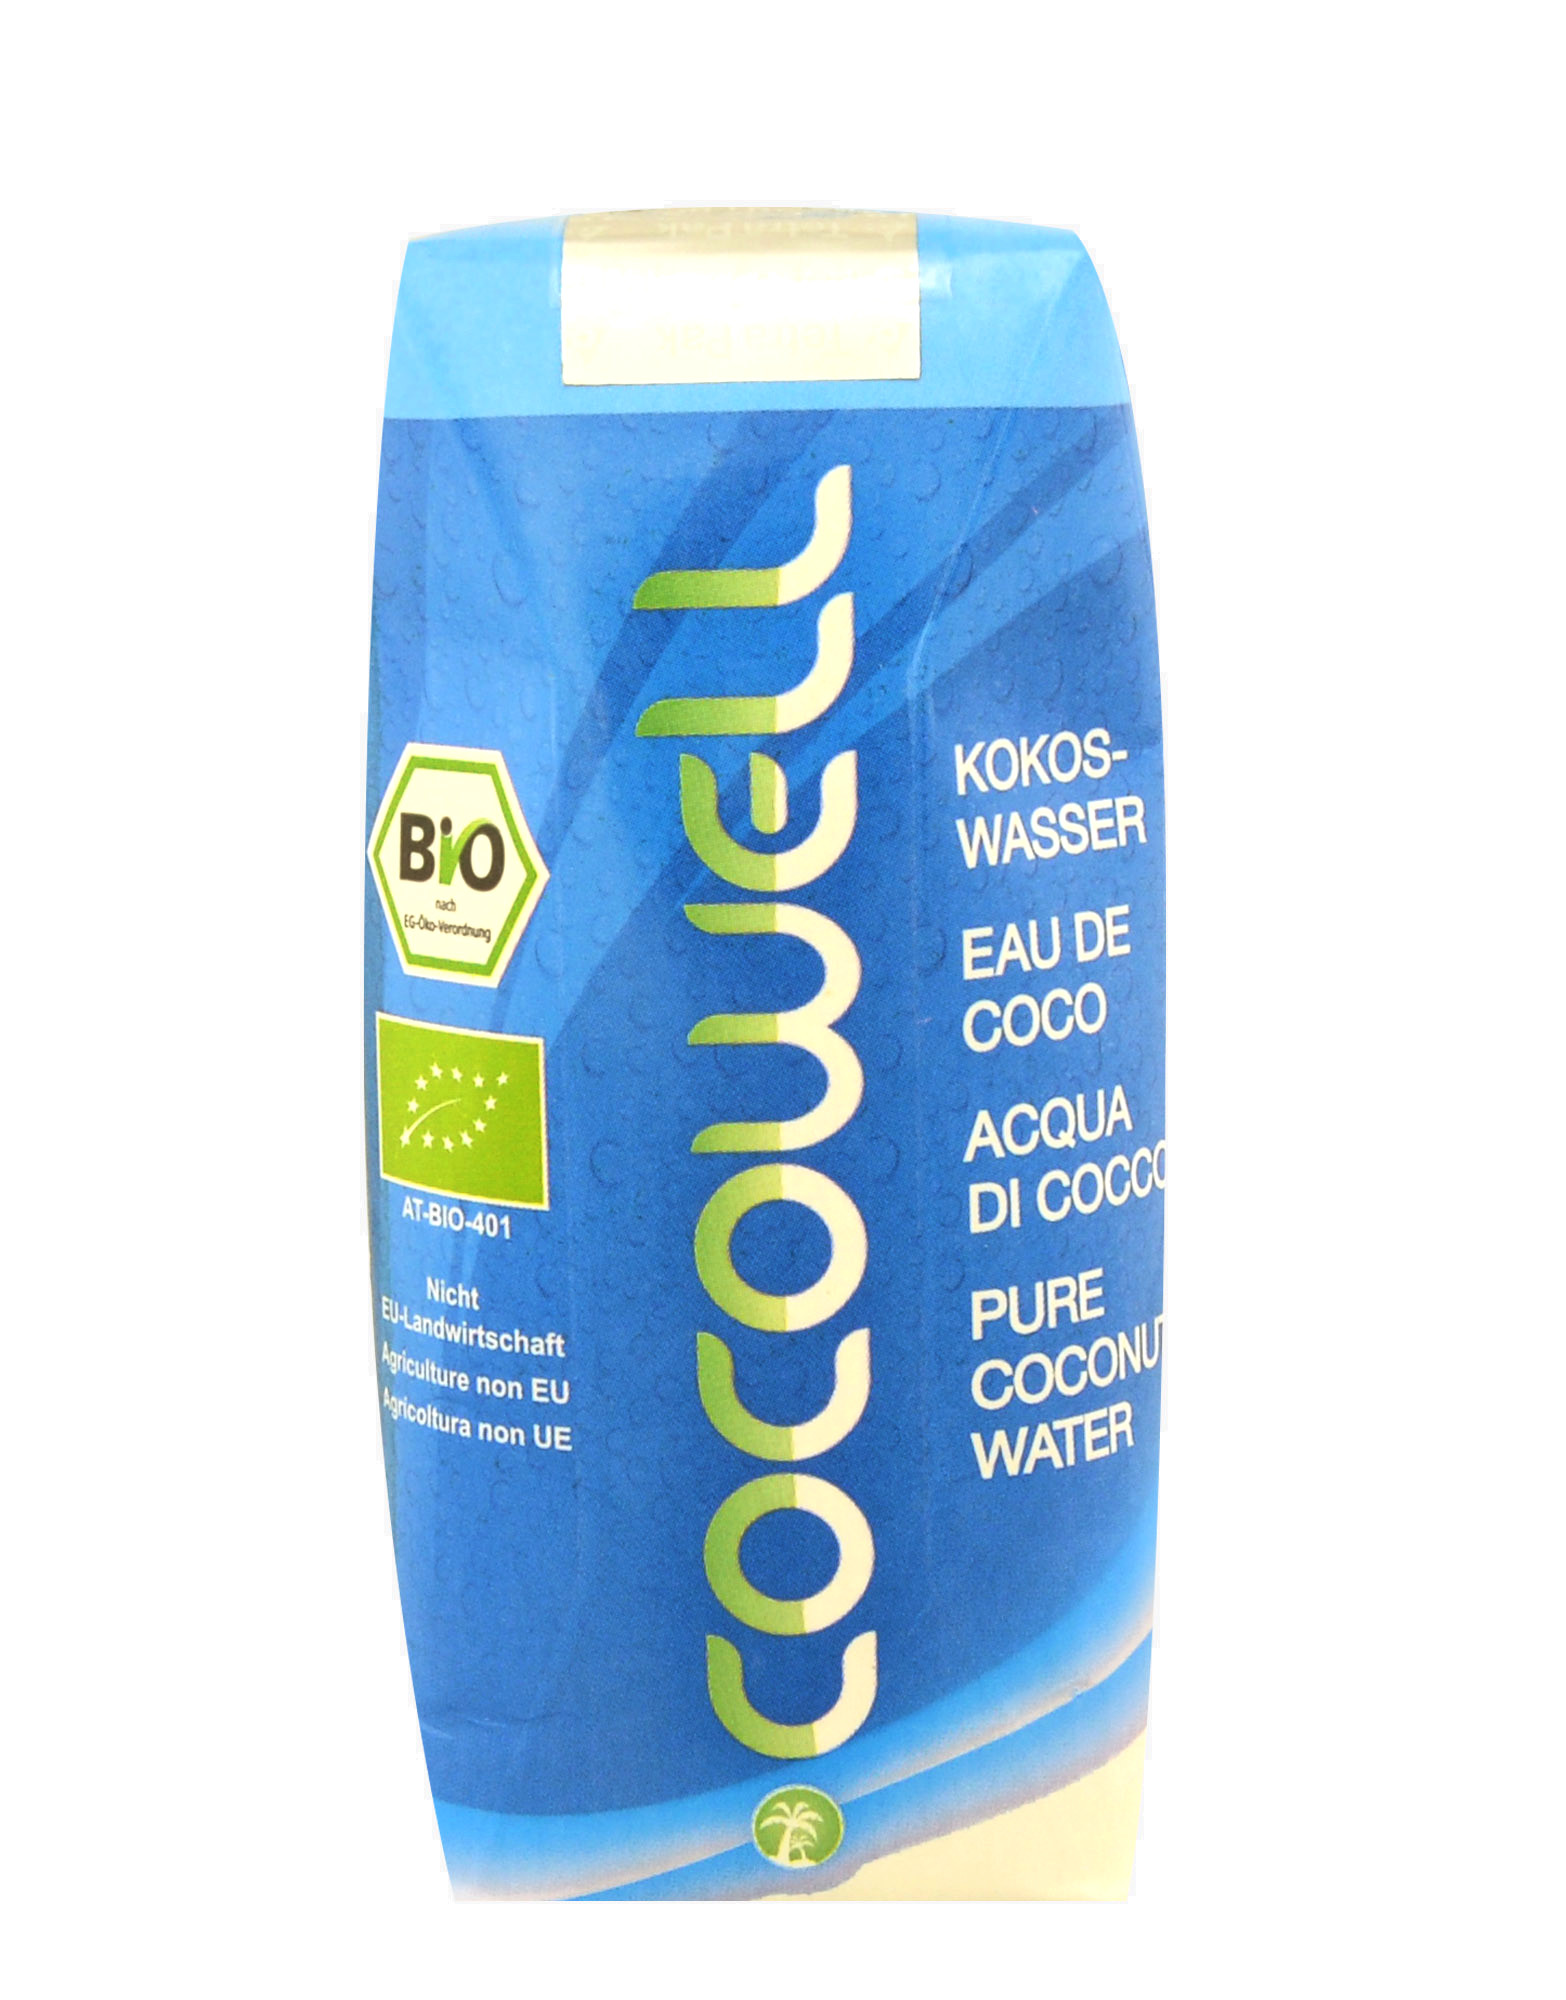 Cocowell - Acqua di Cocco by Ki, 330ml 